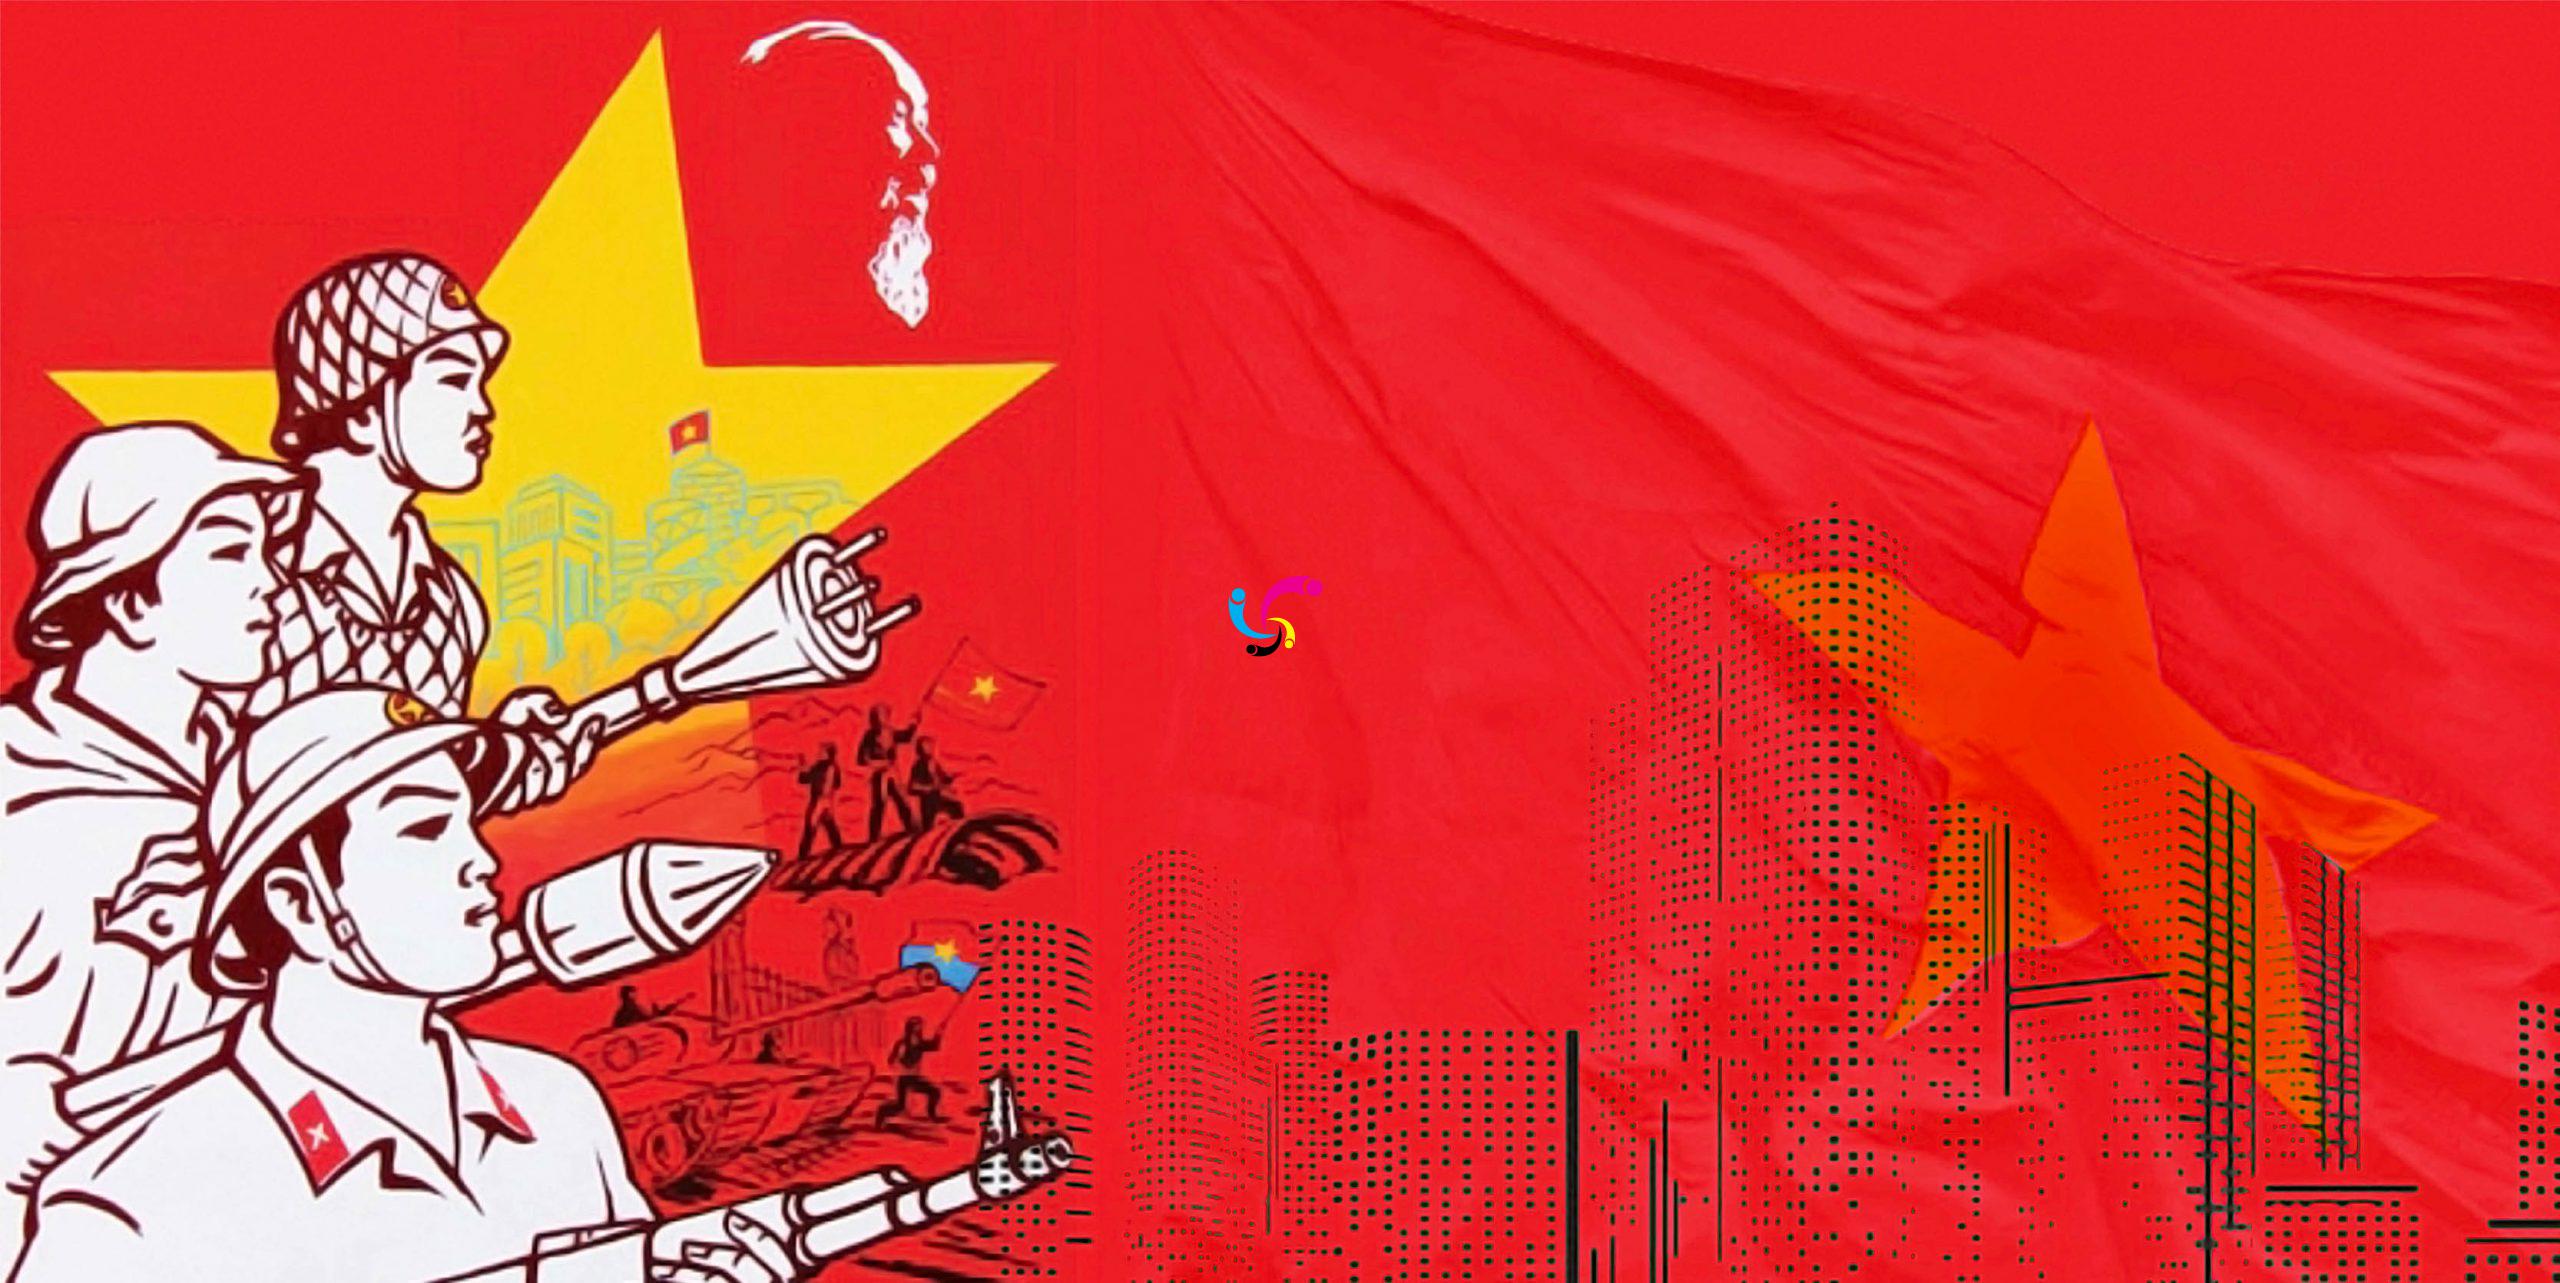 Mẫu cờ Việt Nam: Mẫu cờ sắc nét và đẹp rực rỡ! Với các màu sắc phối hợp hoàn hảo, từng chi tiết được thiết kế tỉ mỉ và độc đáo. Hình ảnh mẫu cờ Việt Nam sẽ mang lại cho bạn một dấu ấn đẹp trong lòng về quốc gia và người Việt Nam.